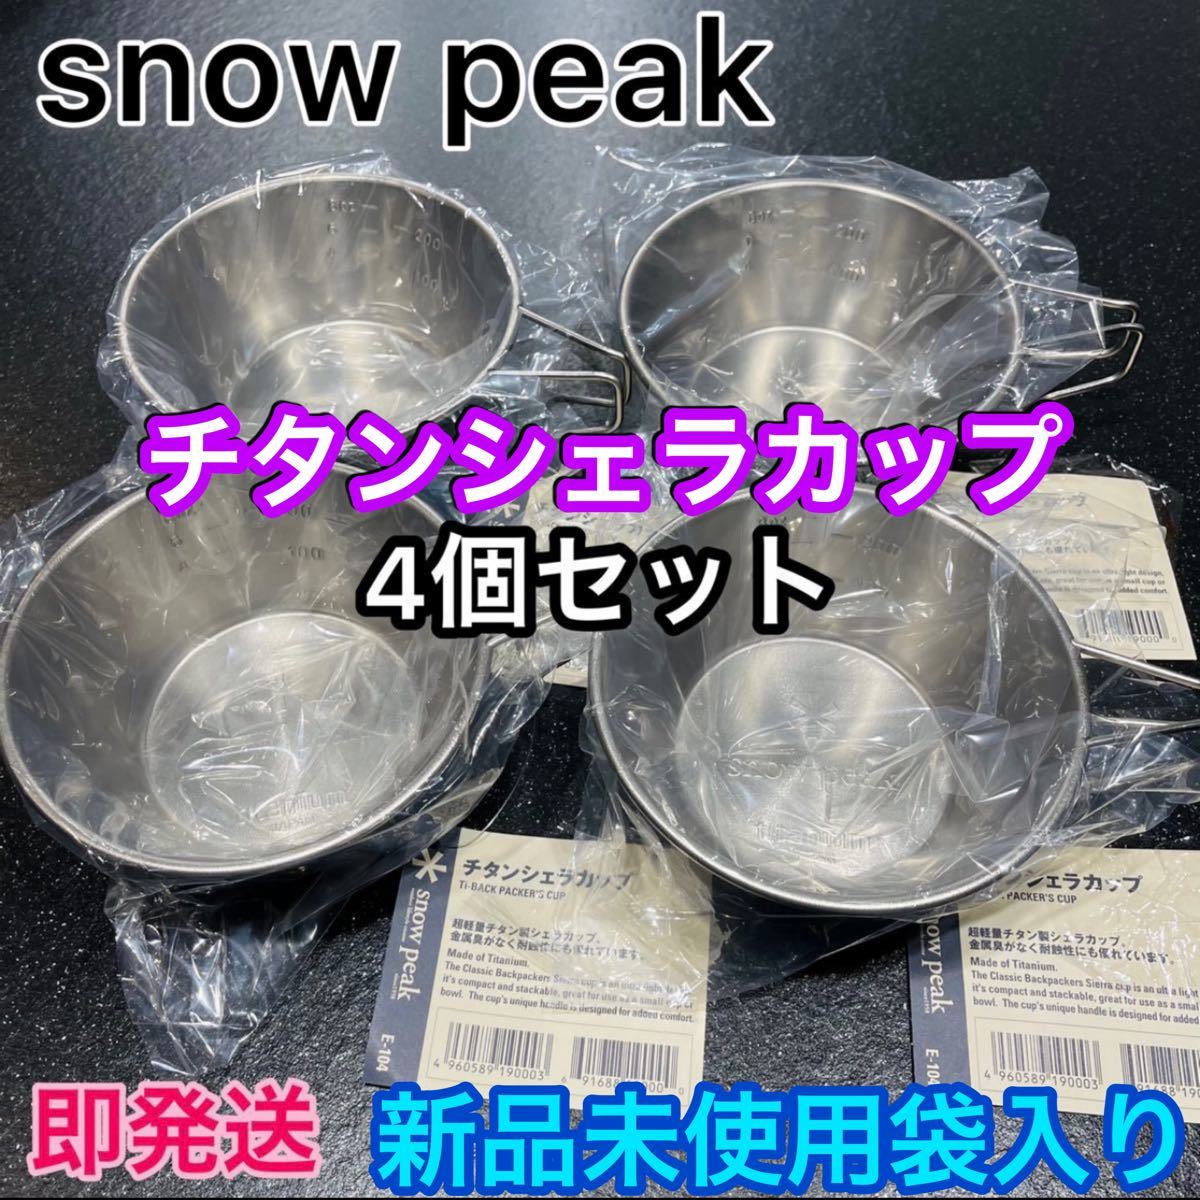 スノーピーク チタンシェラカップ 4個セット ★E-104 ★310ml 【新品未使用】snow peak